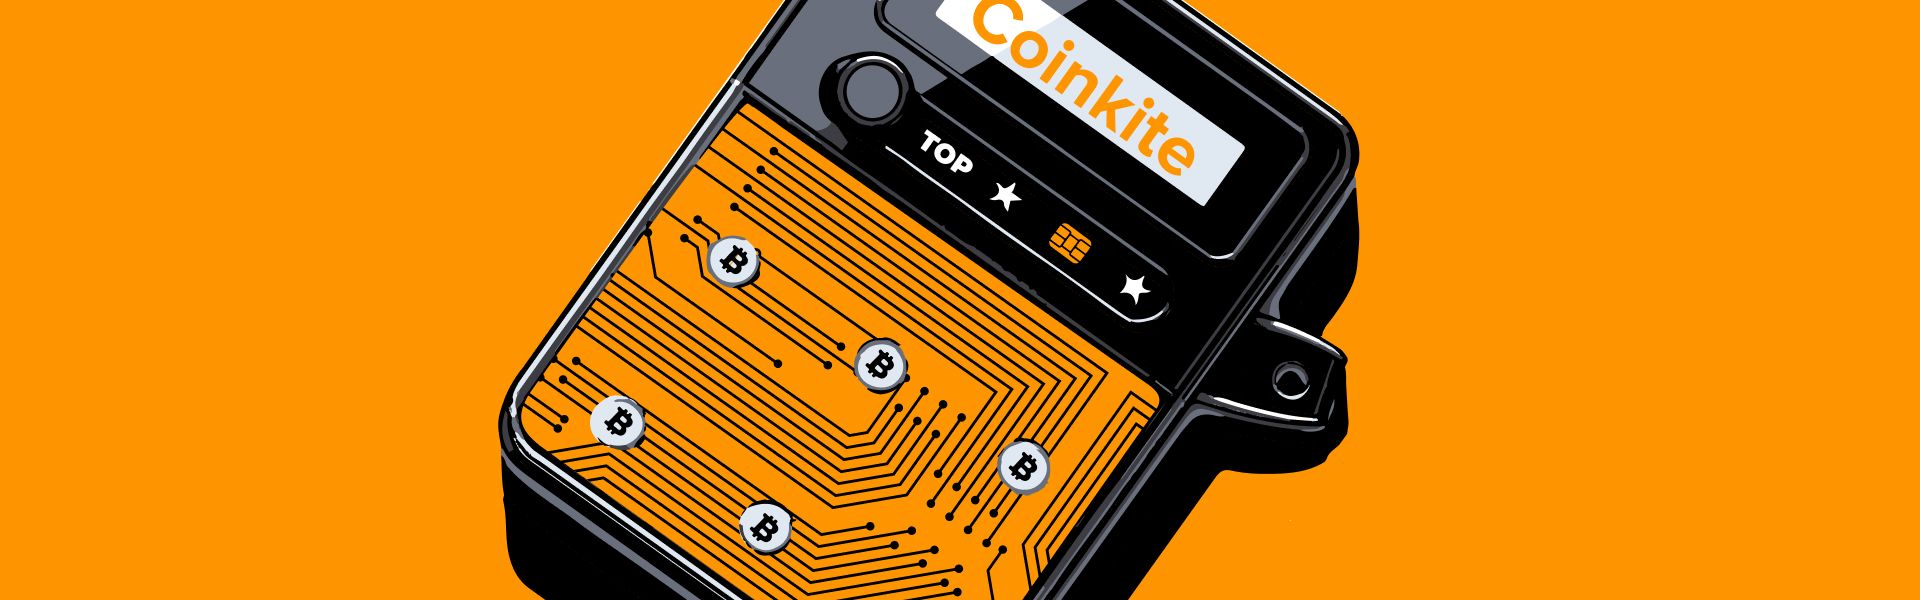 Coinkite: історія одного з провідних виробників BTC-гаманців